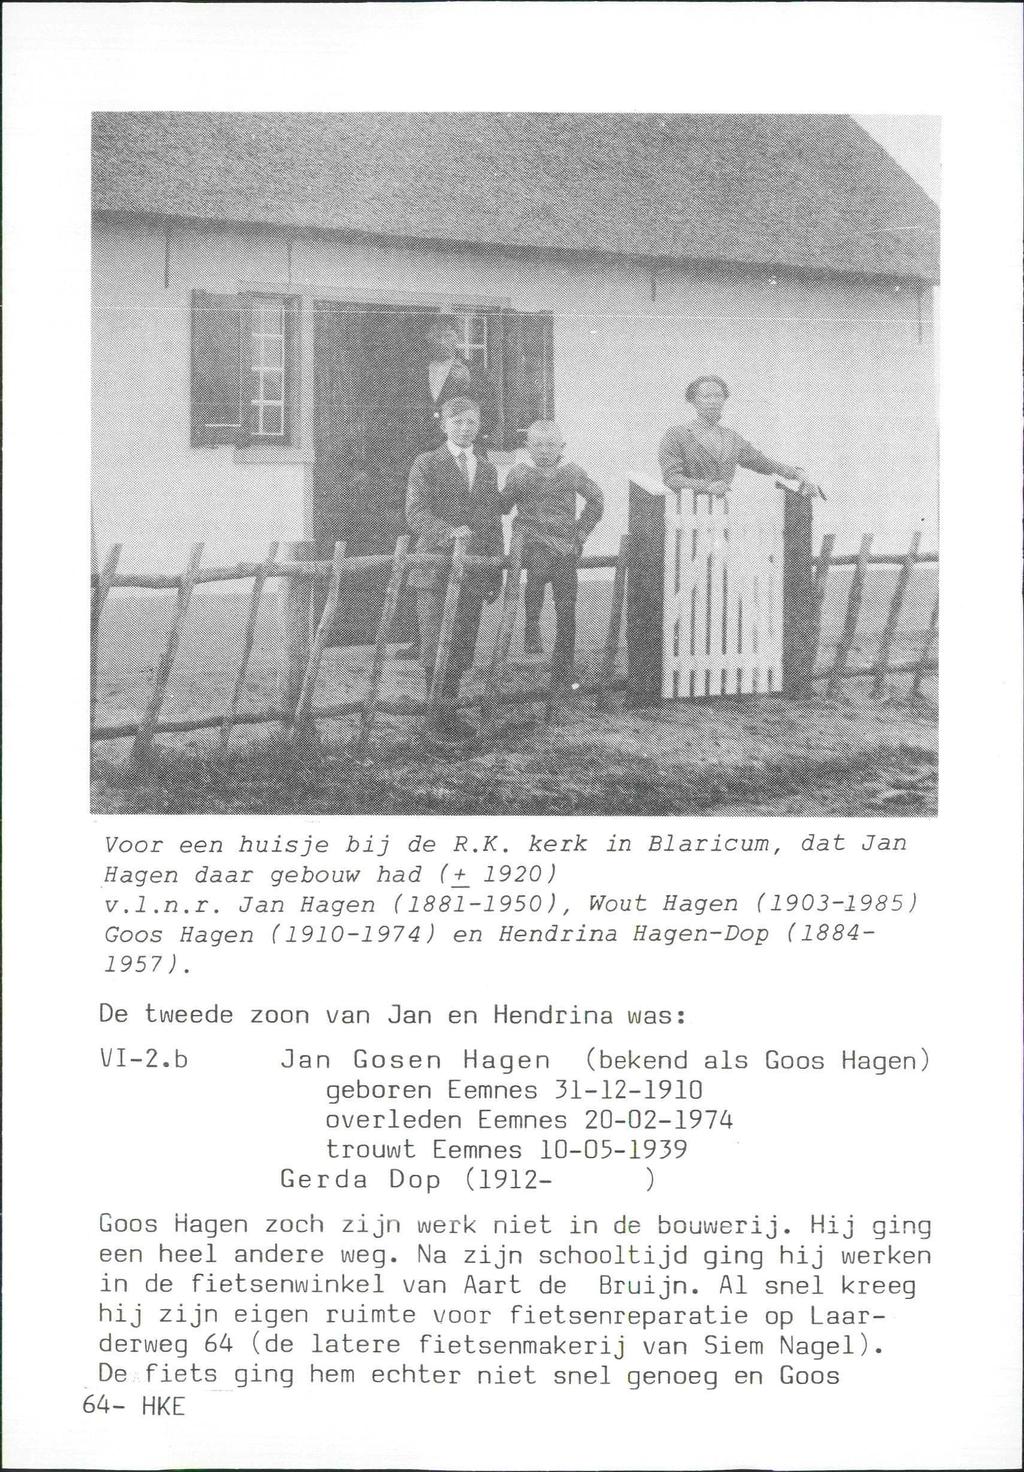 msmskmmmssb^kbssx H H H H I Voor een huisje bij de R.K. kerk in Blaricum, dat Jan Hagen daar gebouw had {+_ 1920) v.l.n.r. Jan Hagen (1881-1950), Wout Hagen (1903-1985) Goos Hagen (1910-1974) en Hendrina Hagen-Dop (1884-1957 ).